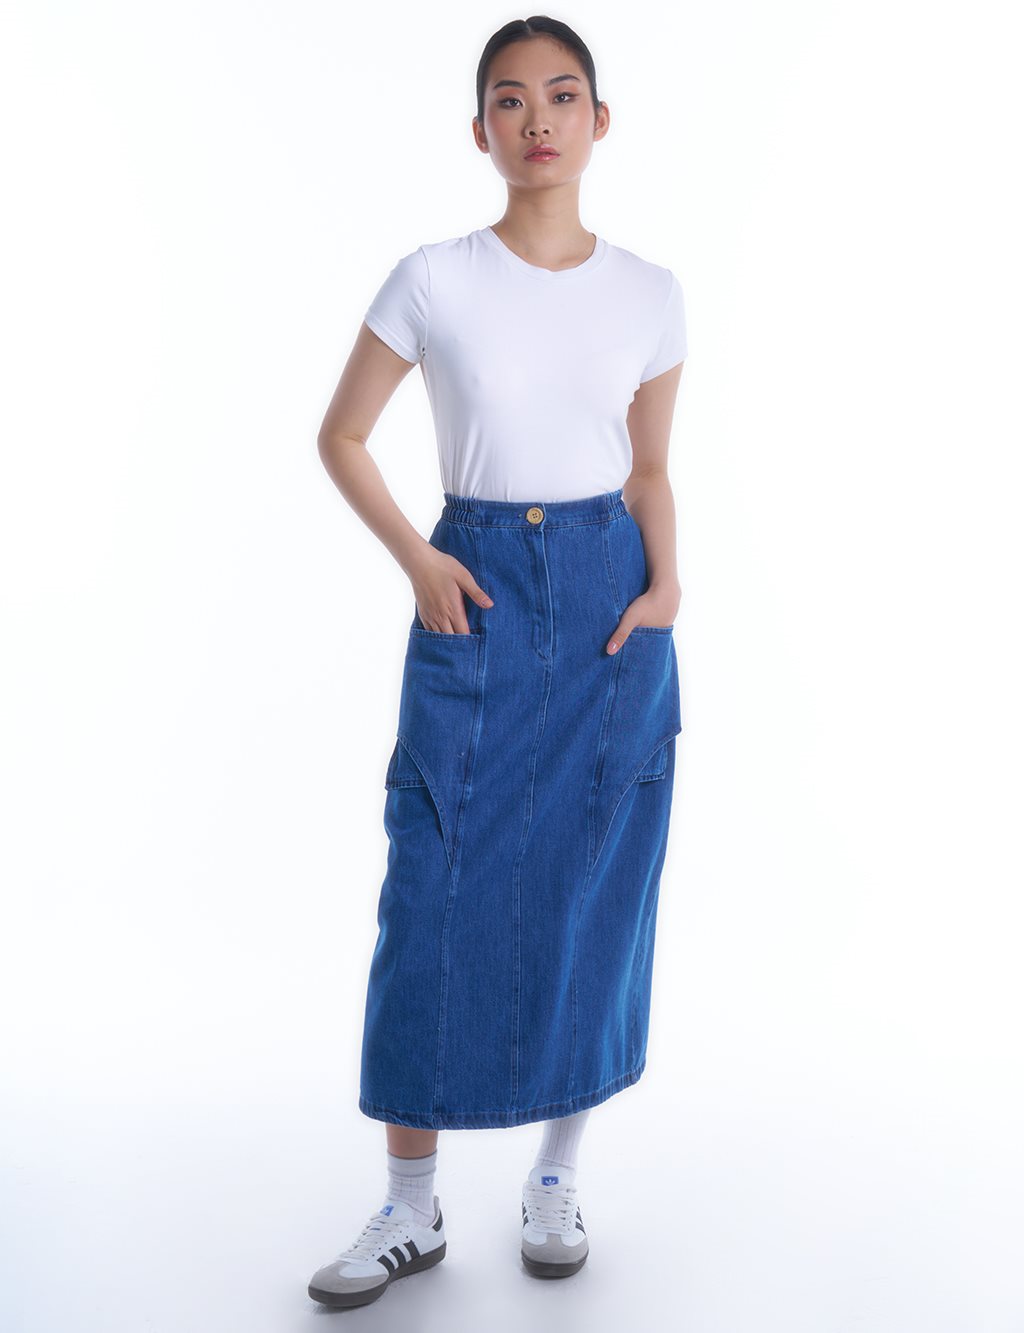 Джинсовая юбка с эластичной резинкой на талии Индиго Kayra